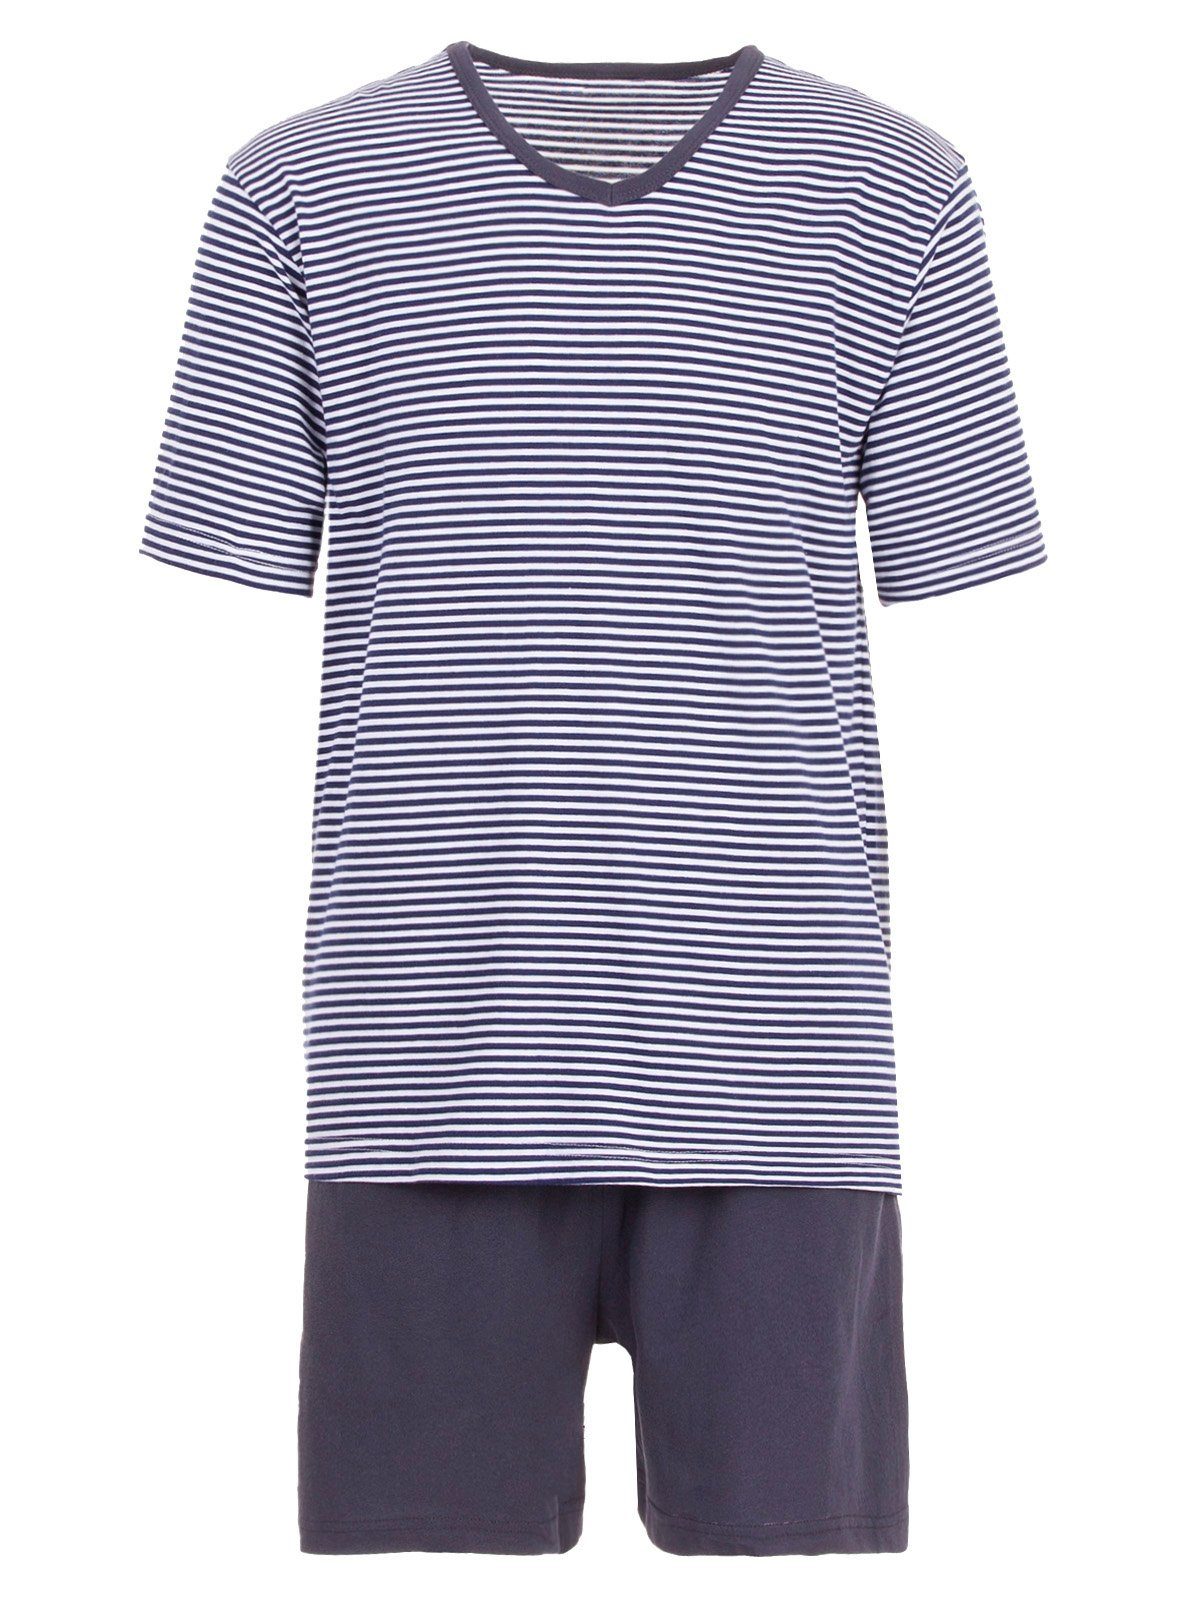 Henry Terre Schlafanzug Pyjama Set Shorty - V-Neck navy